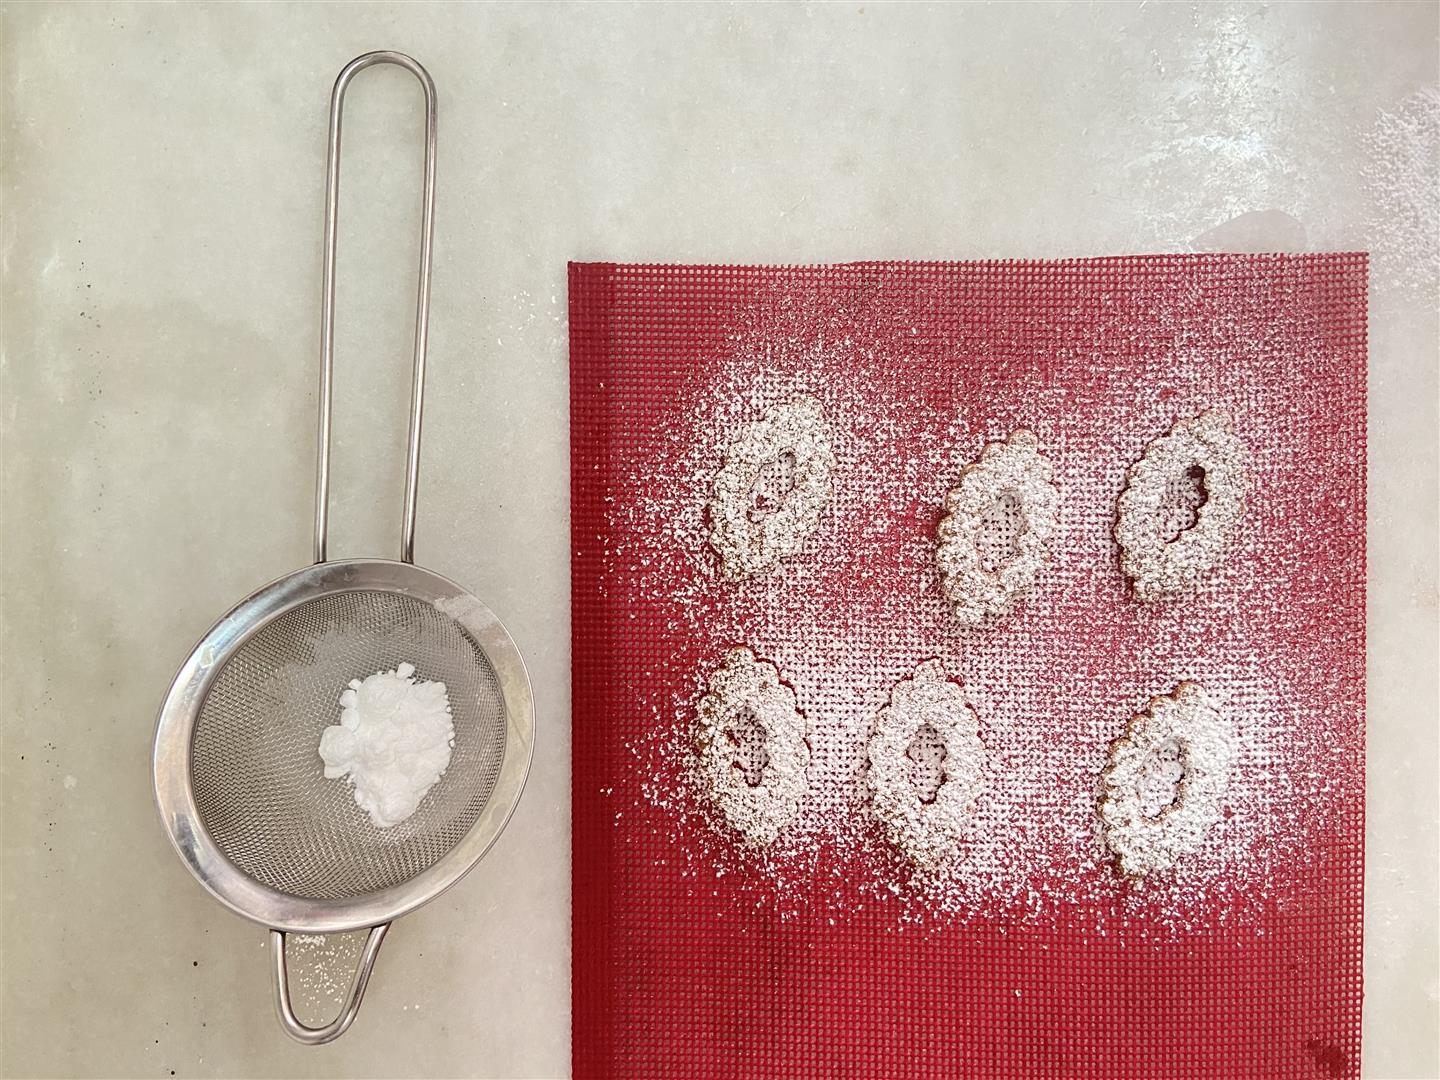 Fotografía de: Aprende a hacer galletas linzer, una de las recetas del Diploma en Pastelería Gastronómica del CETT-UB | CETT